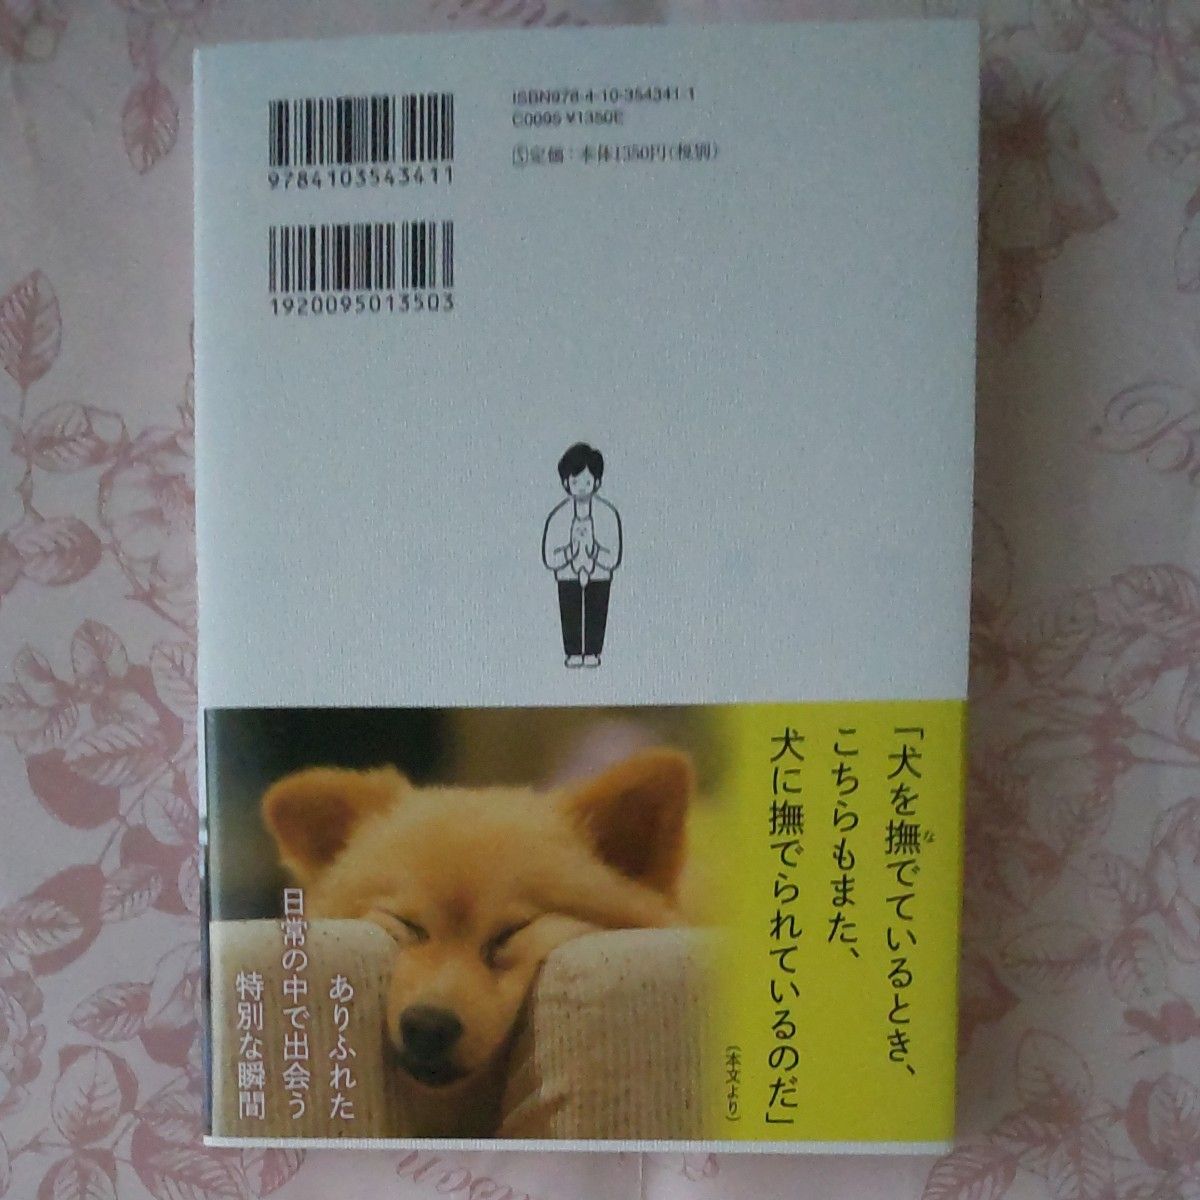 本・『犬は歌わないけれど』 水野良樹(いきものがかり) 